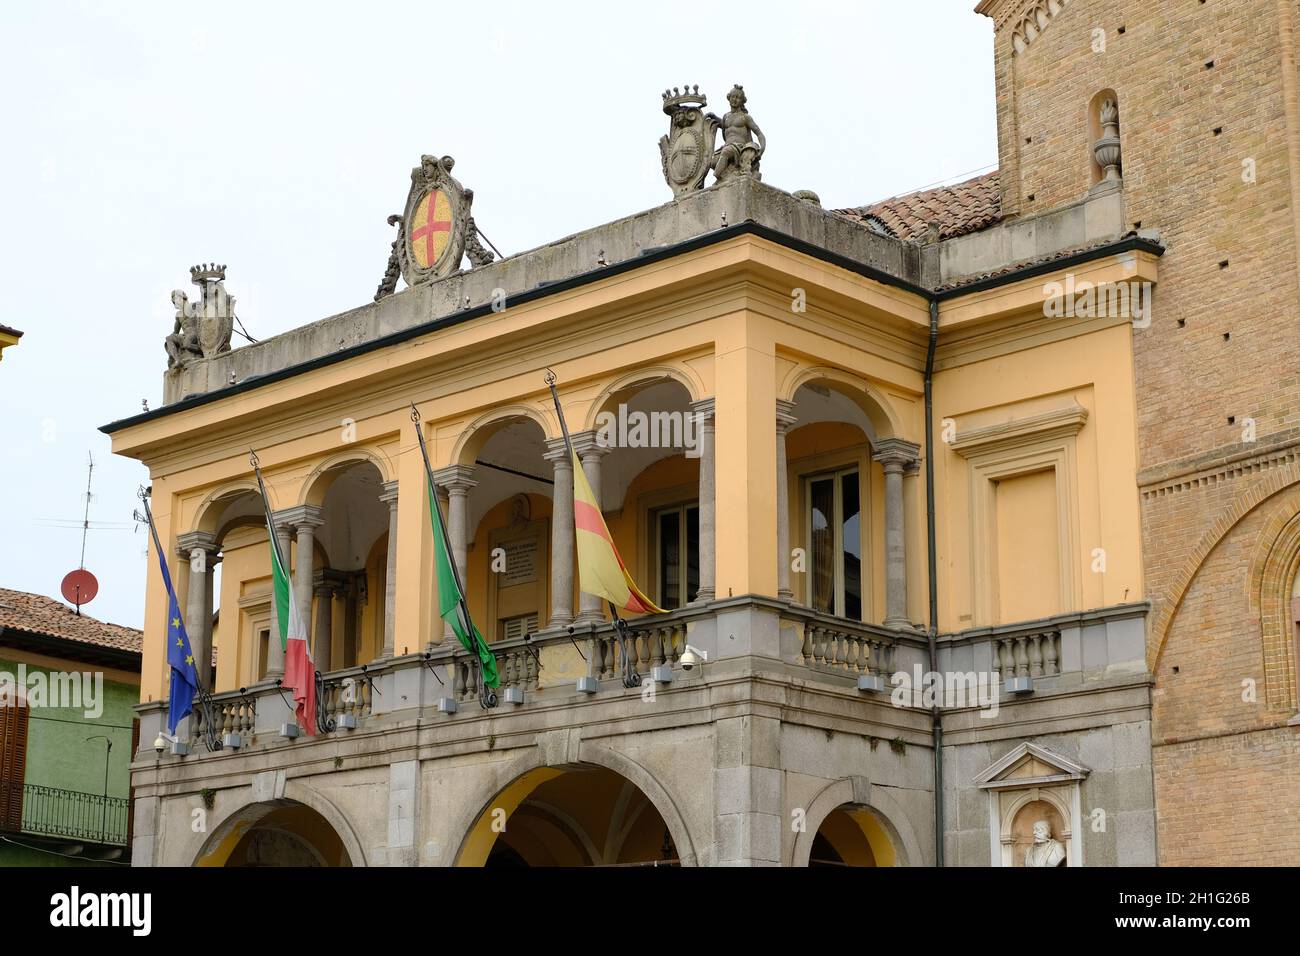 Lodi, Lombardie, Italie vers 09-2021.Palazzo del Broletto, un palais néoclassique.Le bâtiment abrite l'hôtel de ville de la ville de po.Libre de droits Foto. Banque D'Images